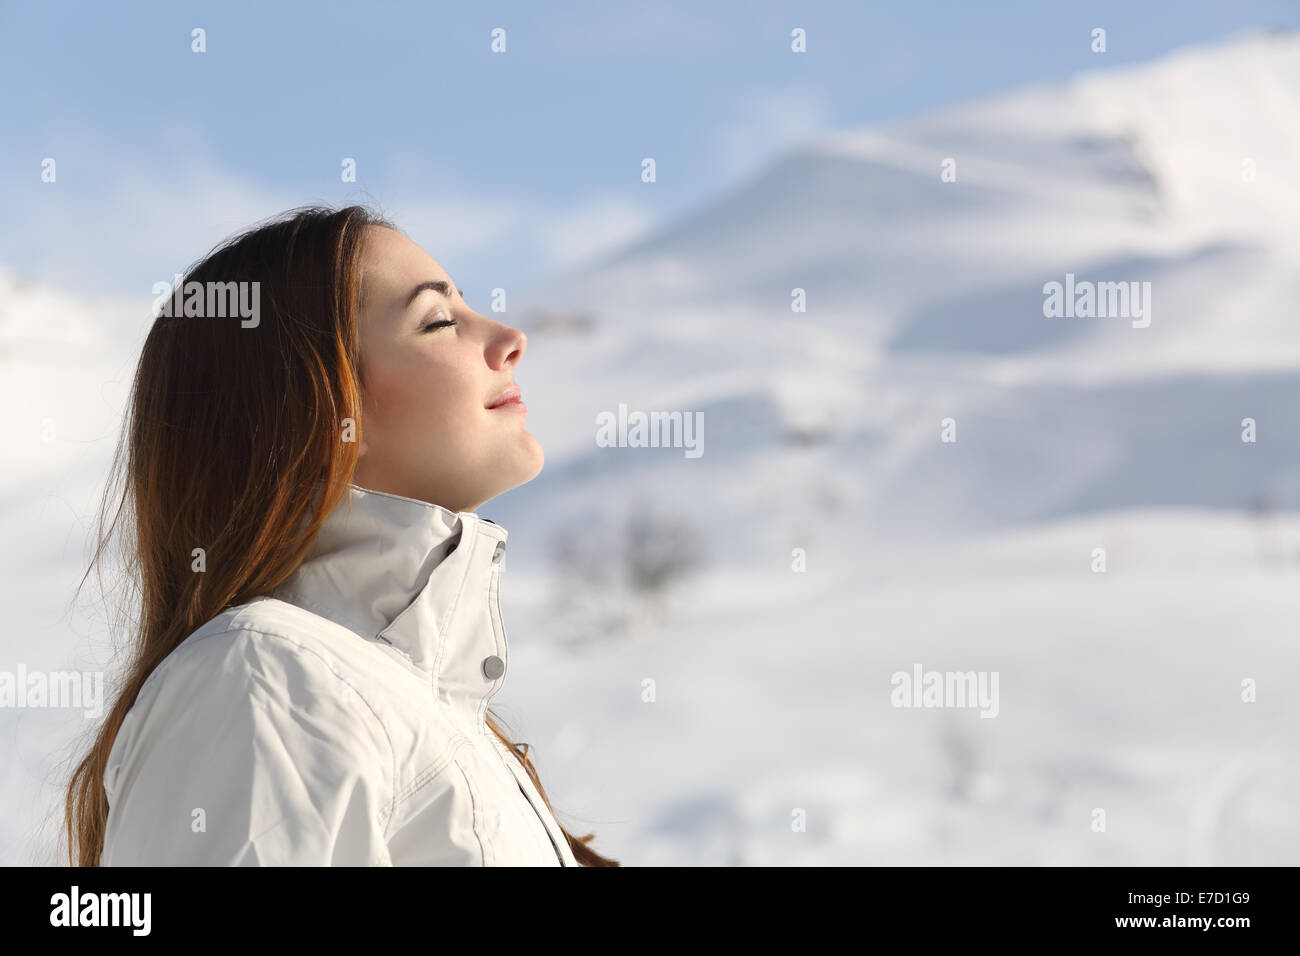 Profilo di un explorer donna respirando aria fresca in inverno con una montagna innevata in background Foto Stock